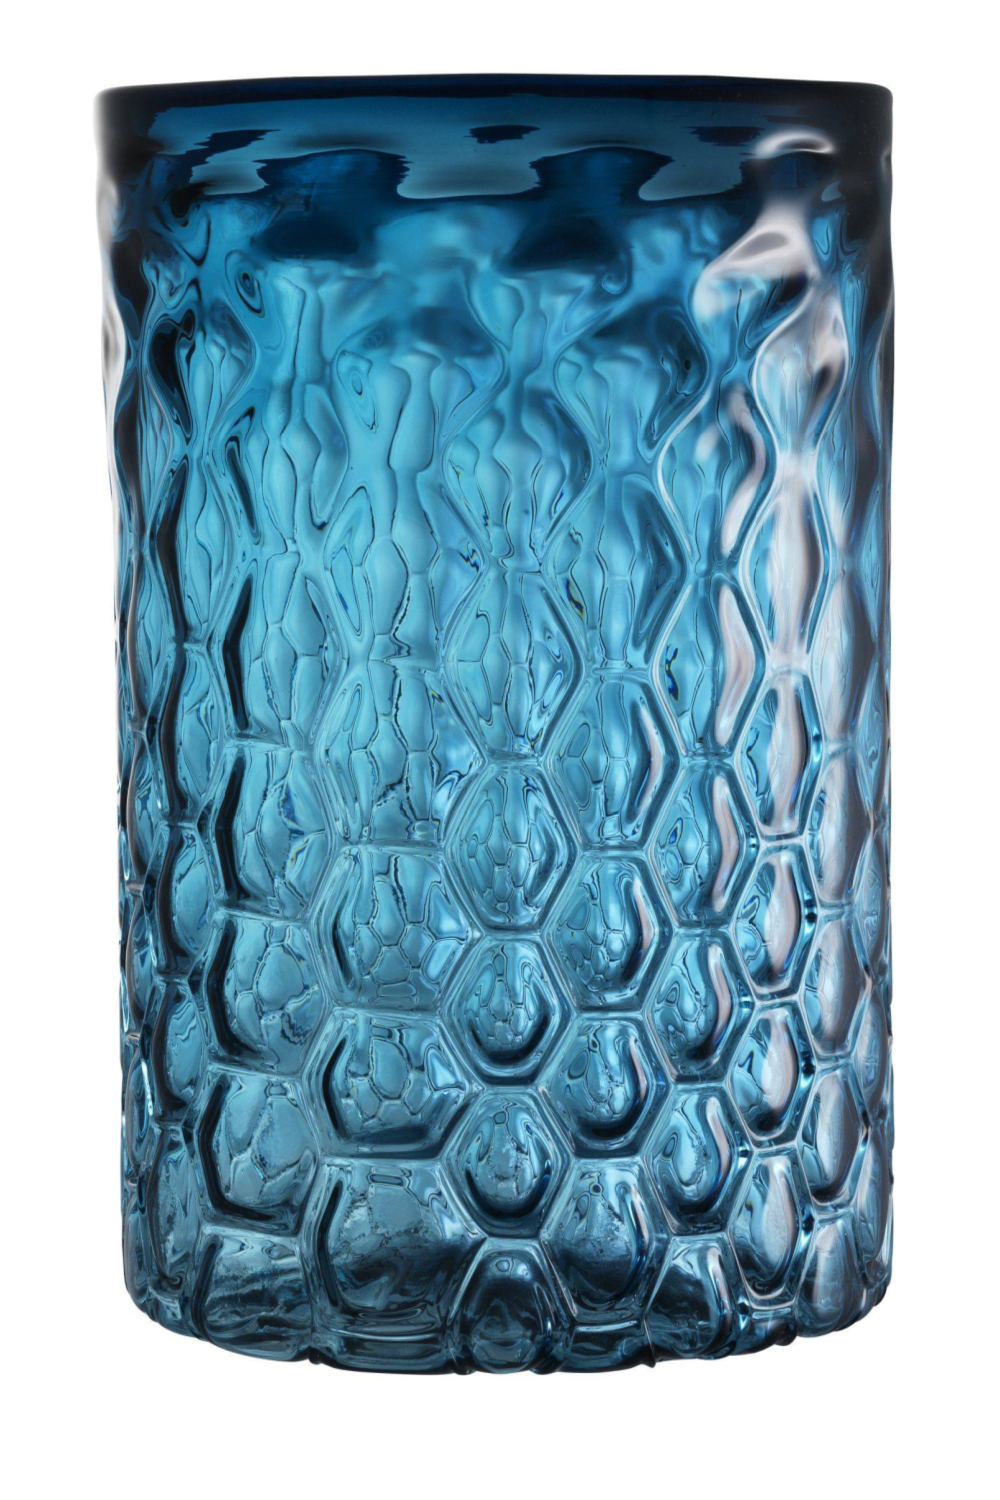 Blue Glass Hurricane - L | Eichholtz Aquila | OROA